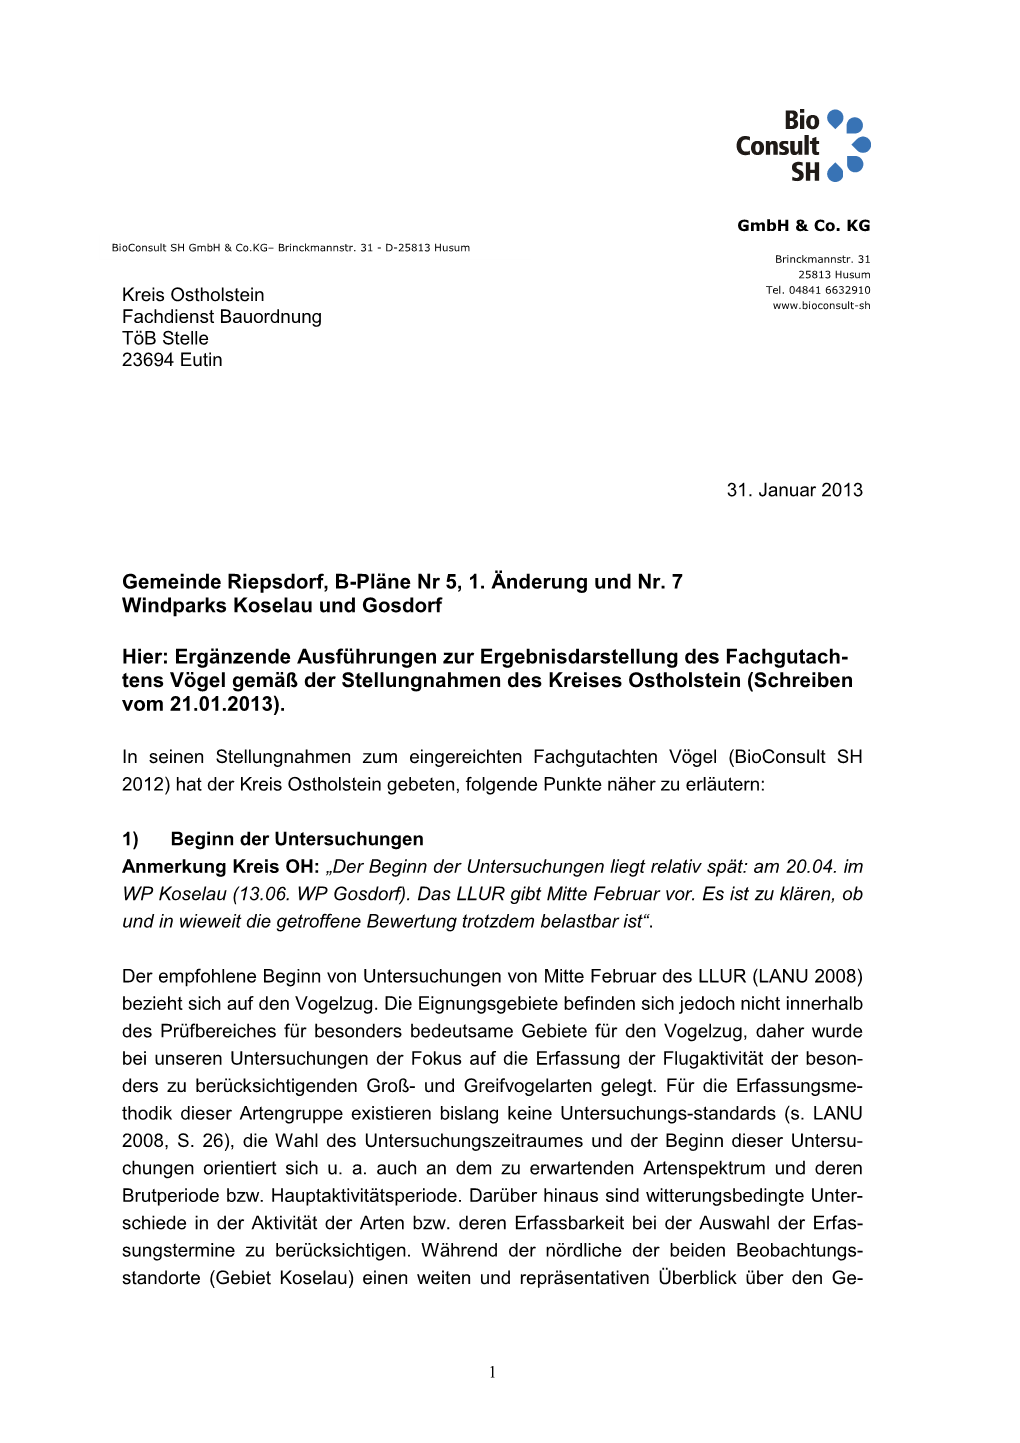 Gemeinde Riepsdorf, B-Pläne Nr 5, 1. Änderung Und Nr. 7 Windparks Koselau Und Gosdorf